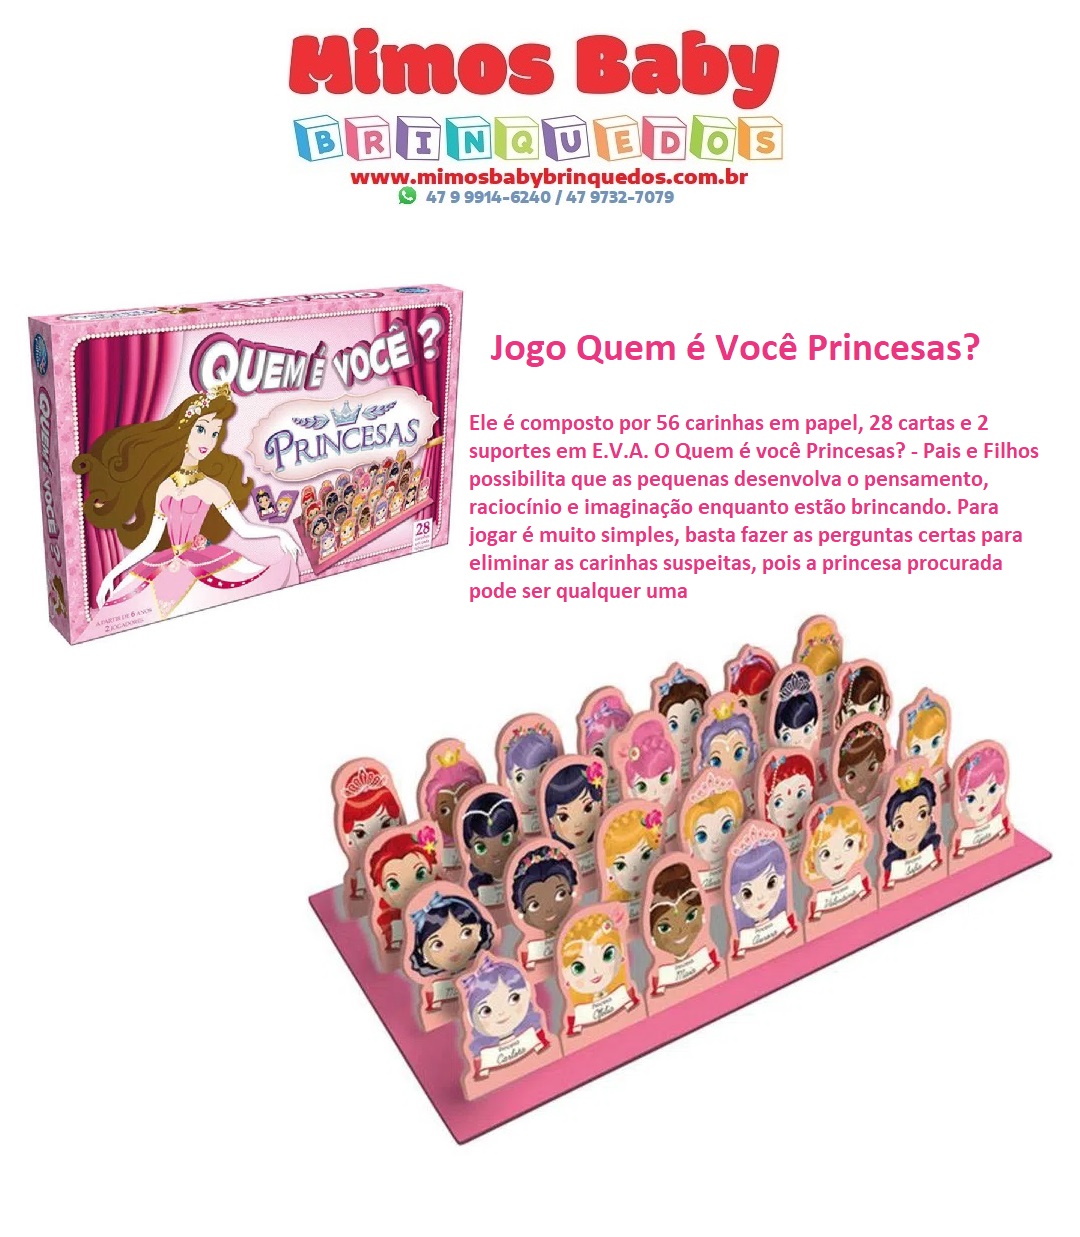 Jogo Mimo Das Letras Disney Princesa